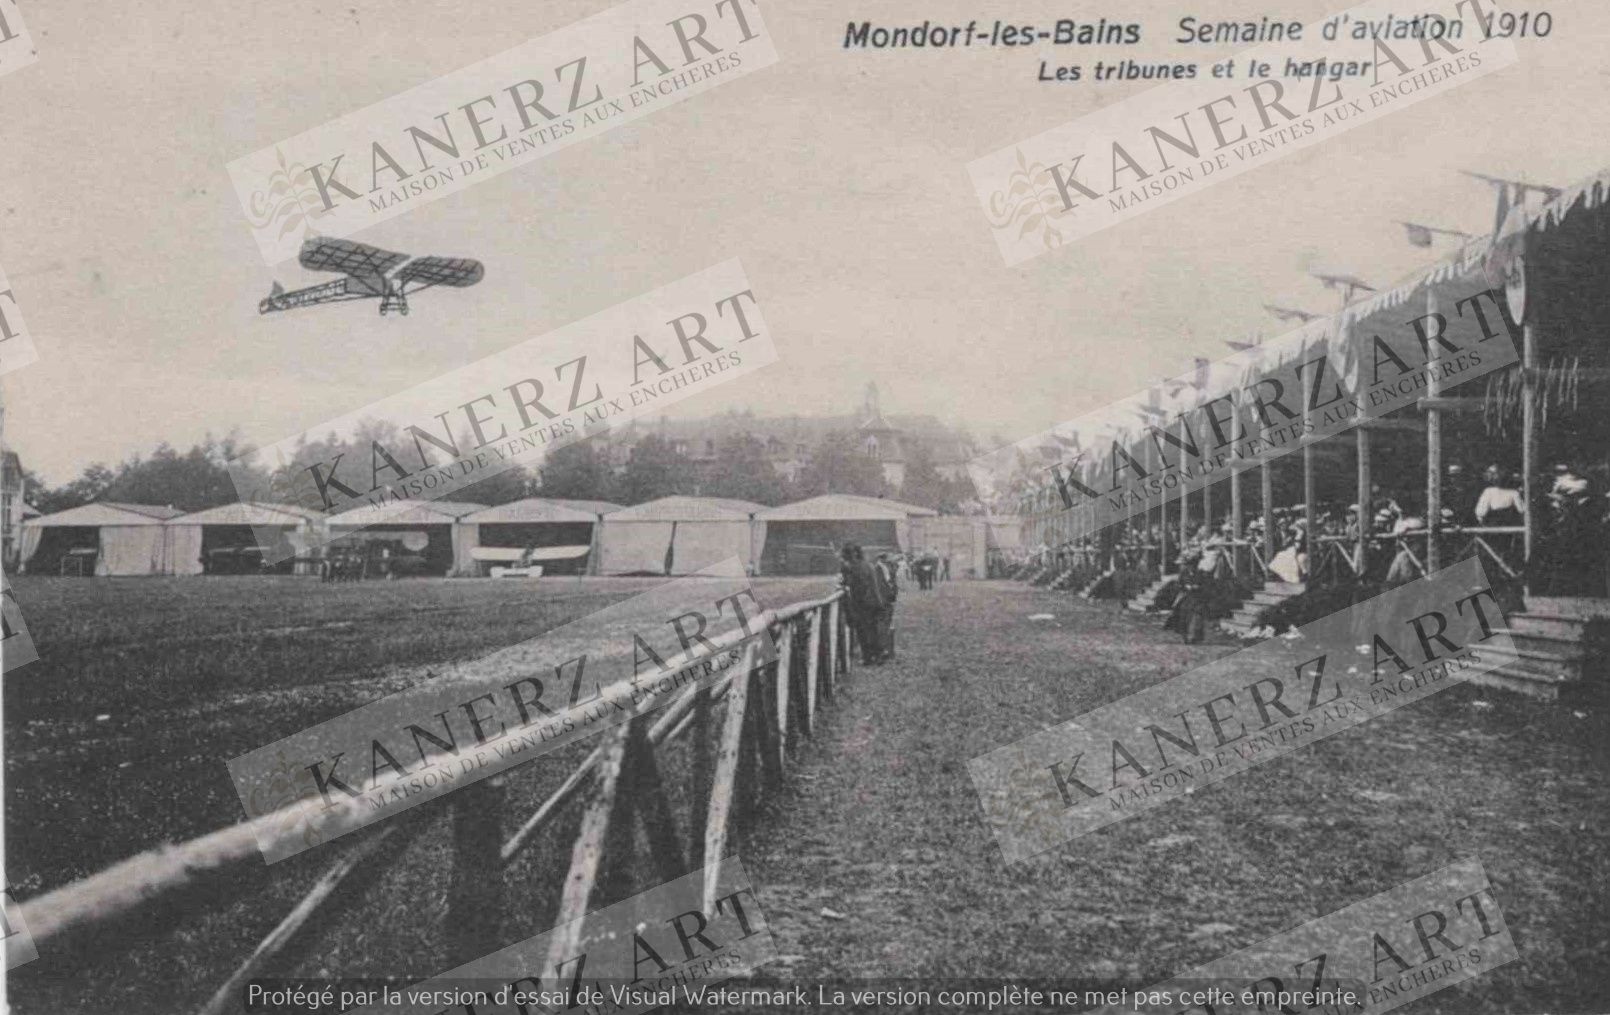 Null (AVIATION) MONDORF: Aviation Week 1910, stand e hangar, Schumacher, circa 1&hellip;